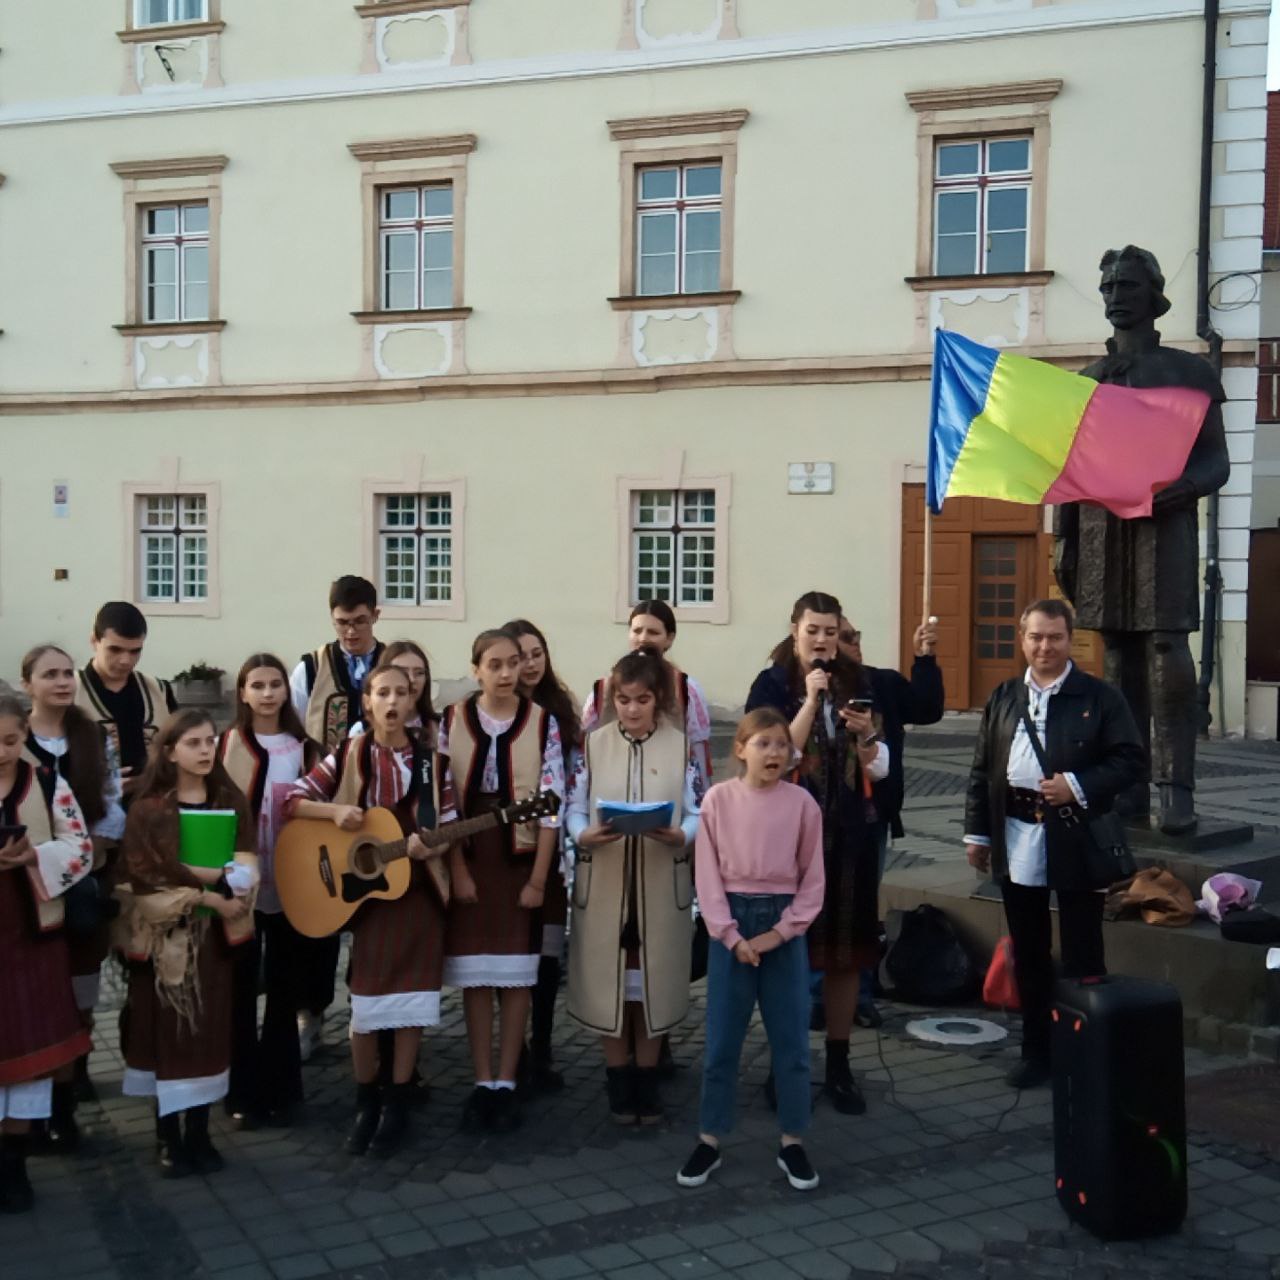 28 februarie: Martiriul lui Horea, Cloșca și Crișan, comemorat la Sibiu de Mihai Tîrnoveanu / Mișcarea Națională. FOTO și VIDEO exclusive